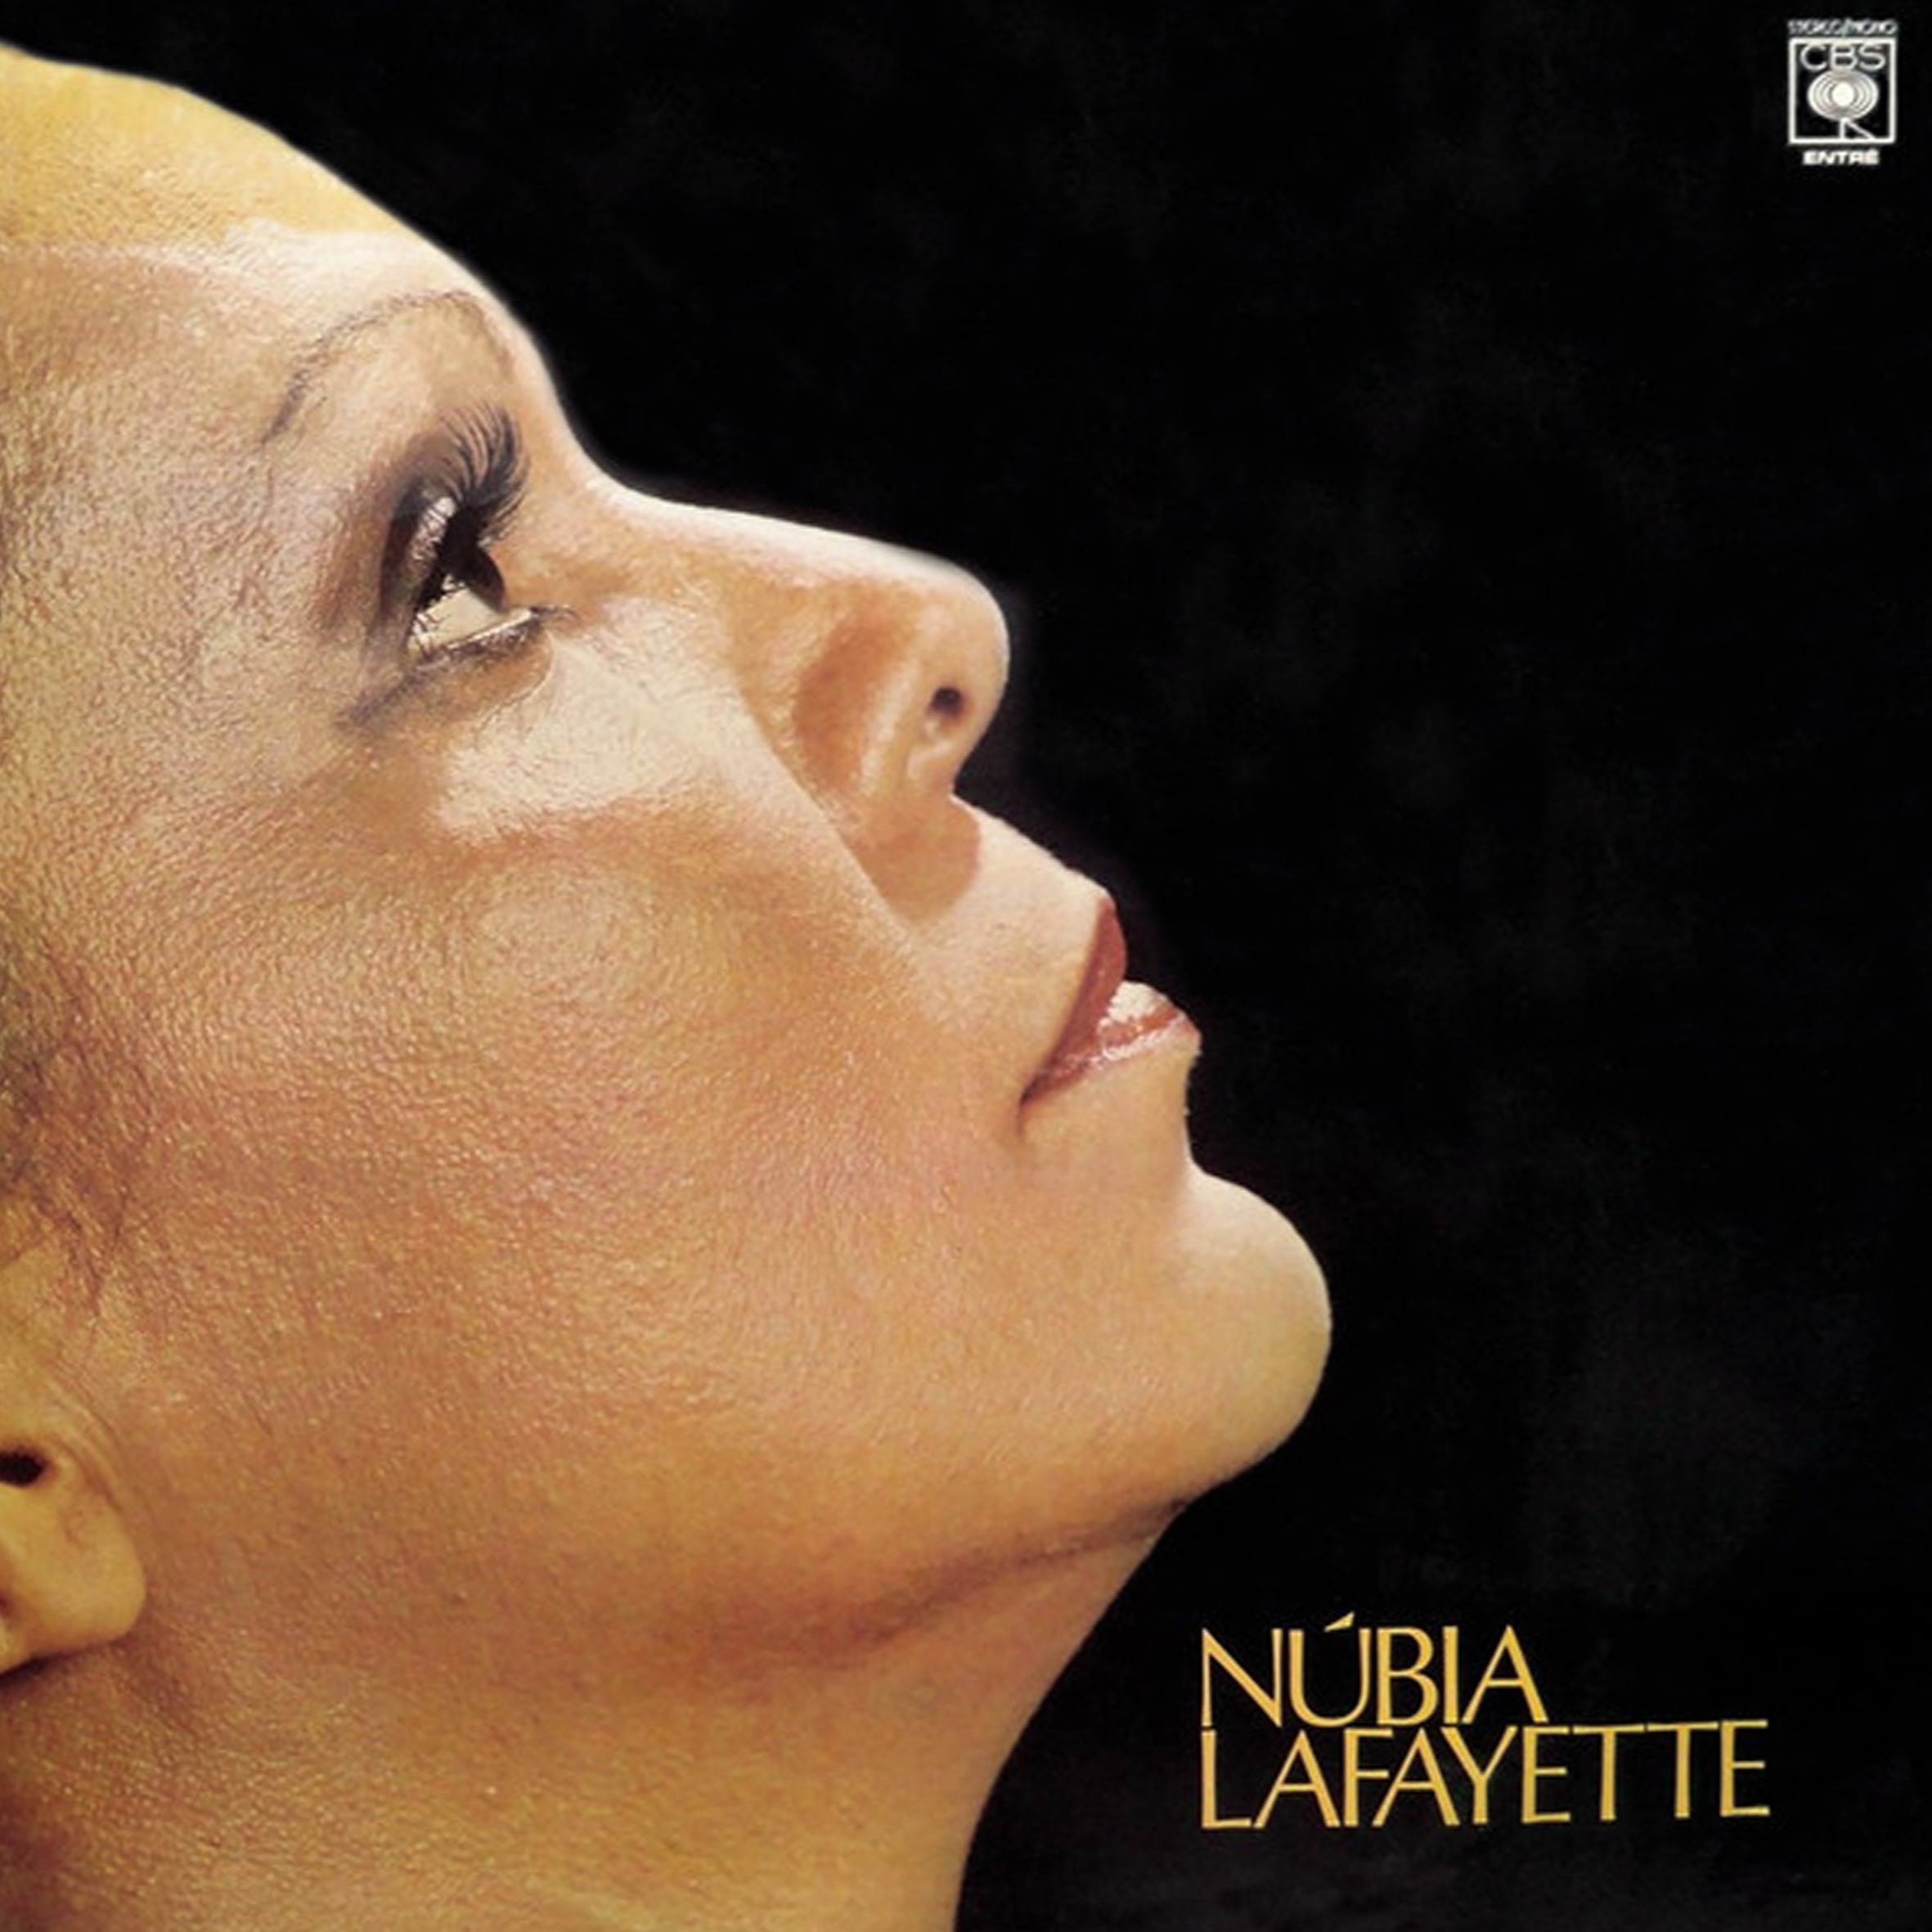 Vinil - Nubia Lafayette - 1977 (Autografado)